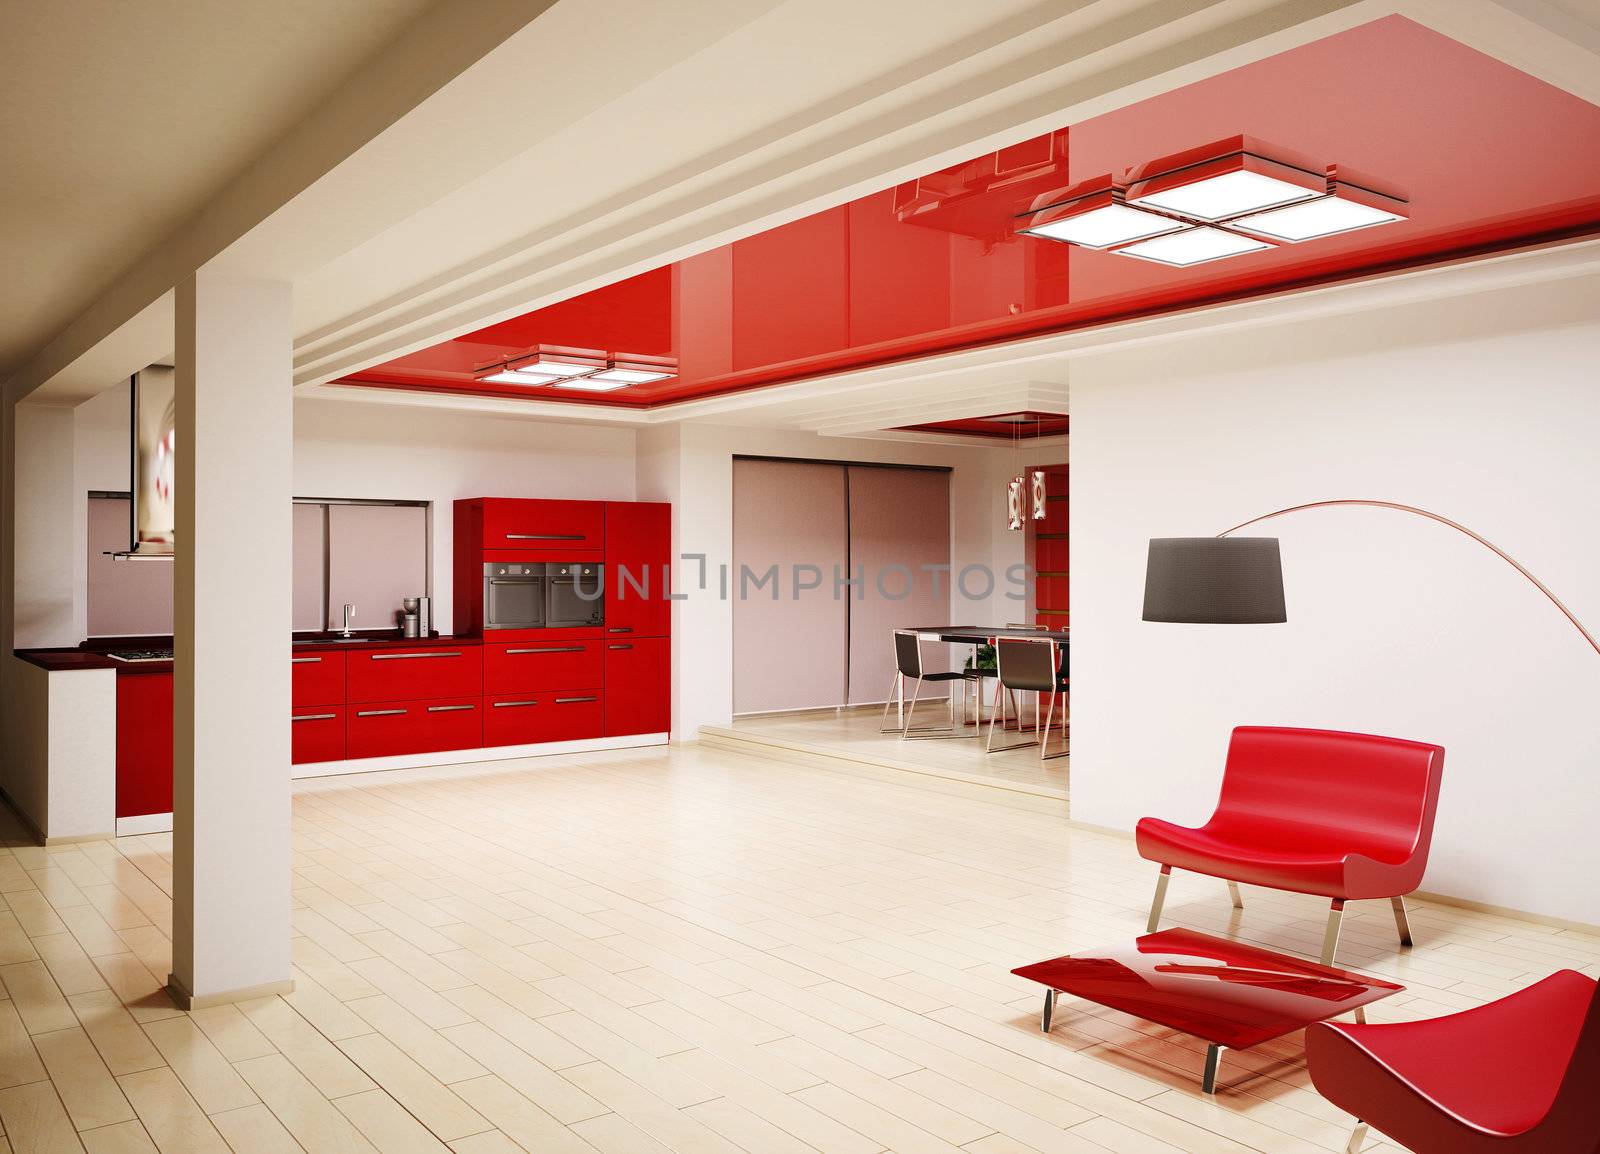 Interior of modern red kitchen 3d render